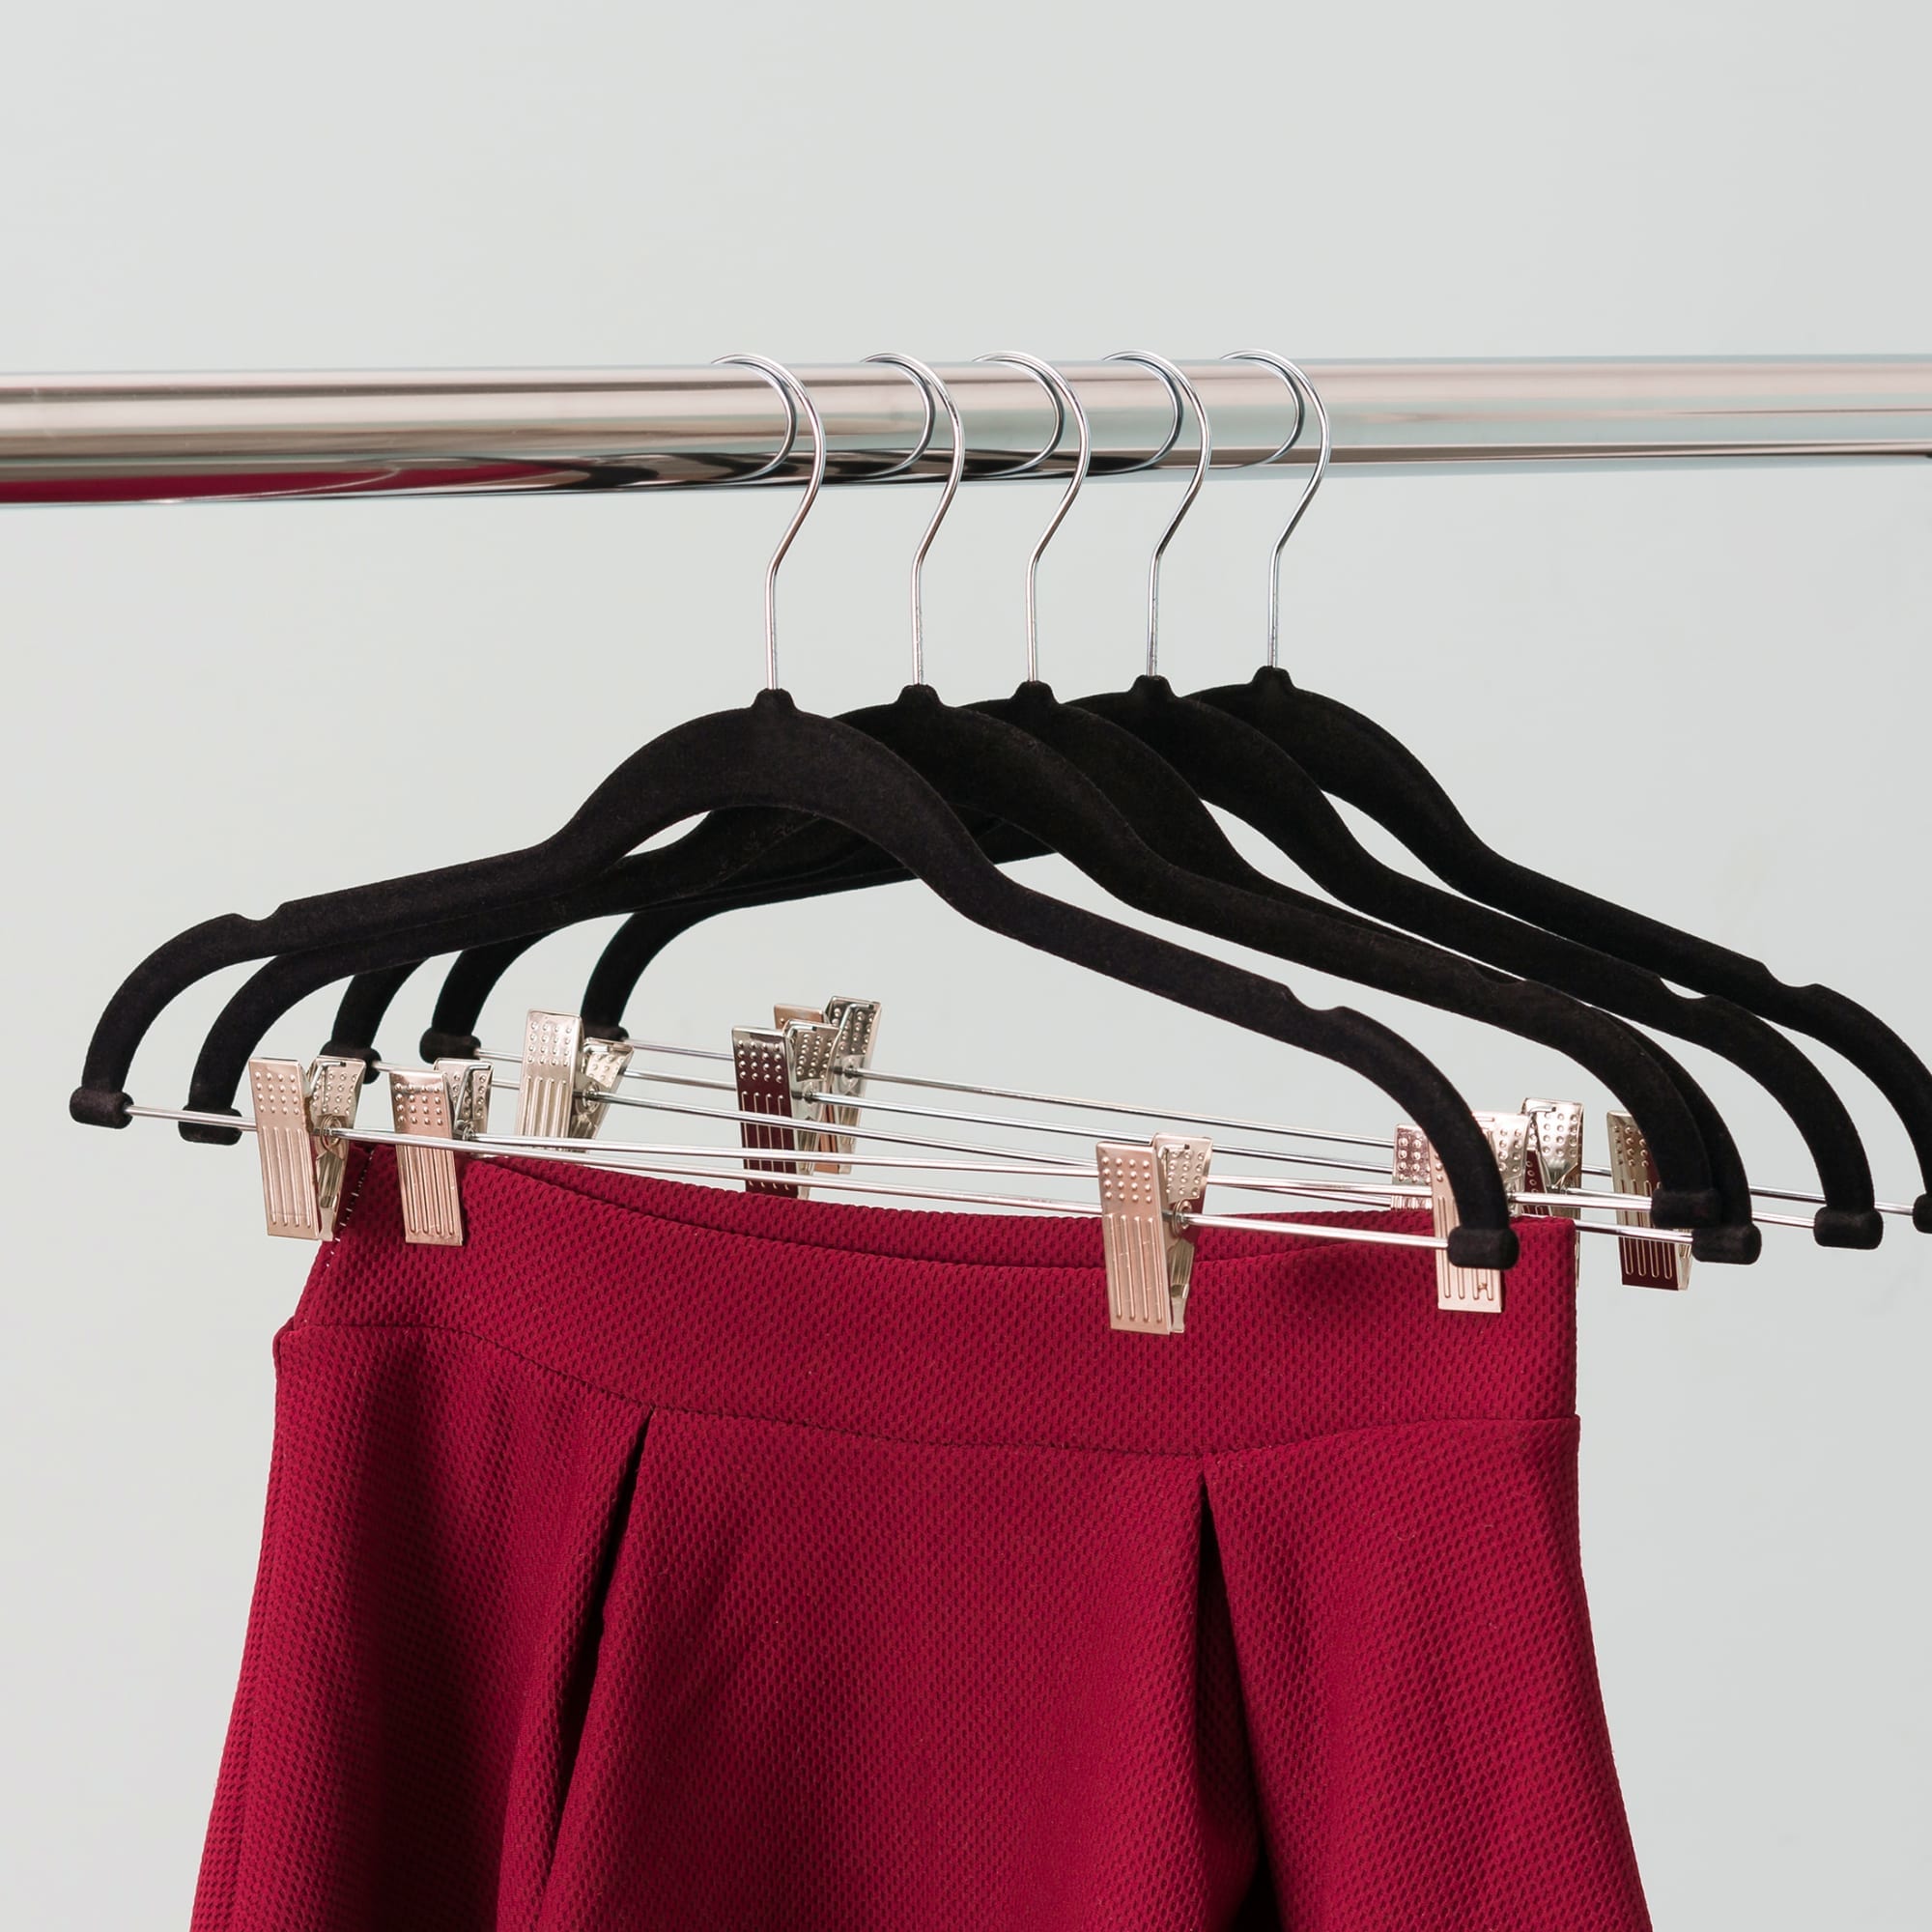 Home Basics Velvet Hangers With Clips, (Pack of 5), Black $4.00 EACH, CASE PACK OF 12